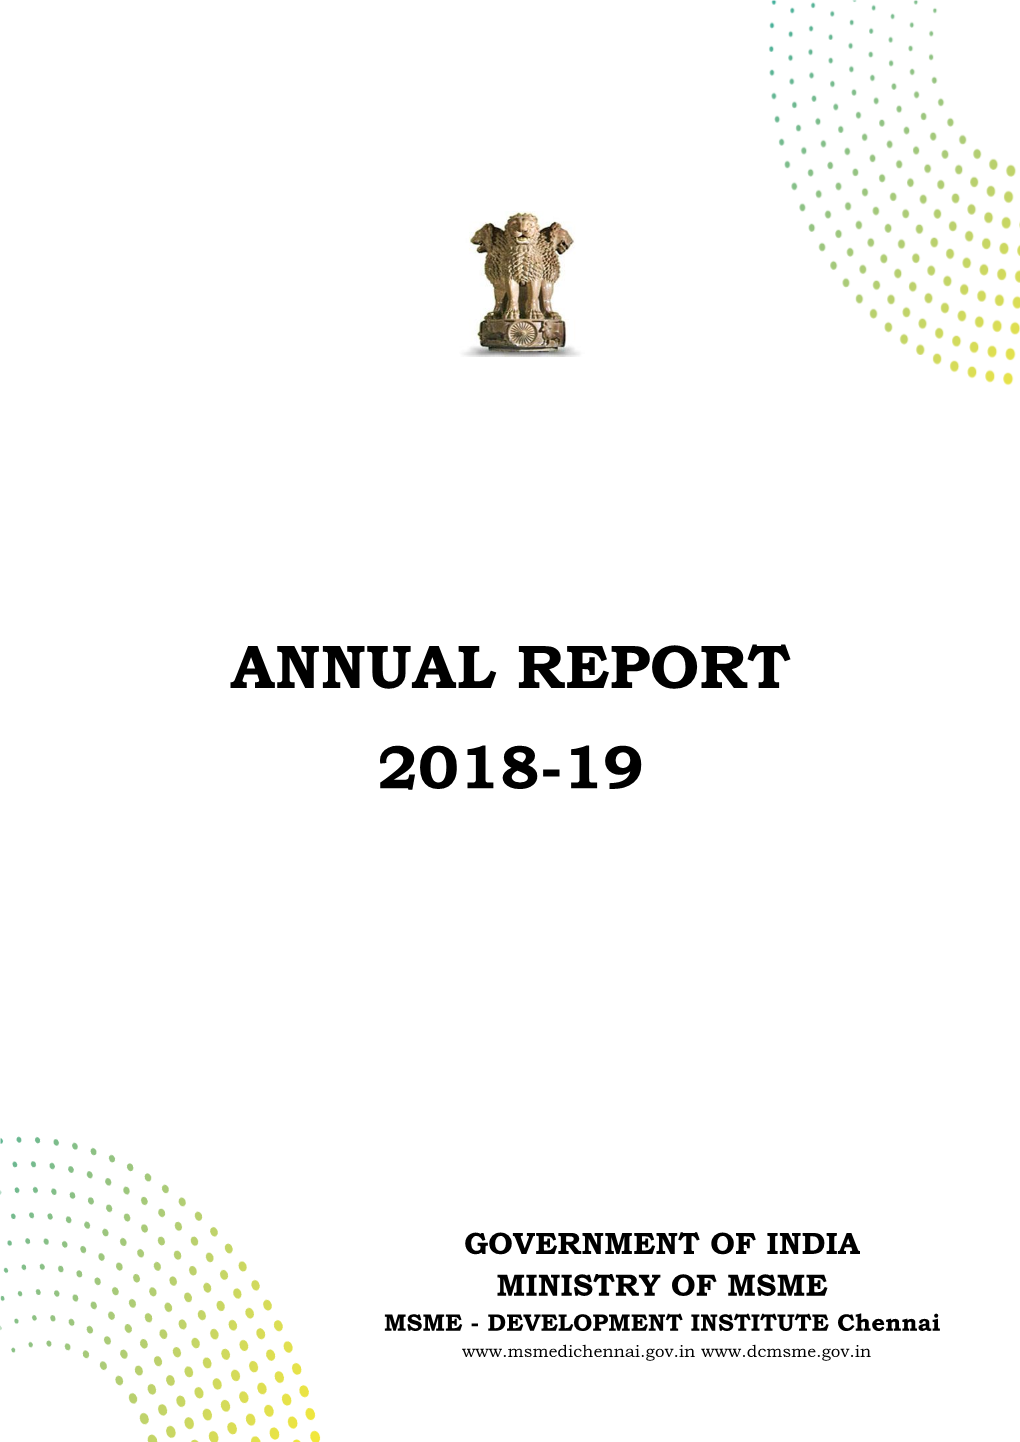 MSME DI Chennai Annual Report 2018-19